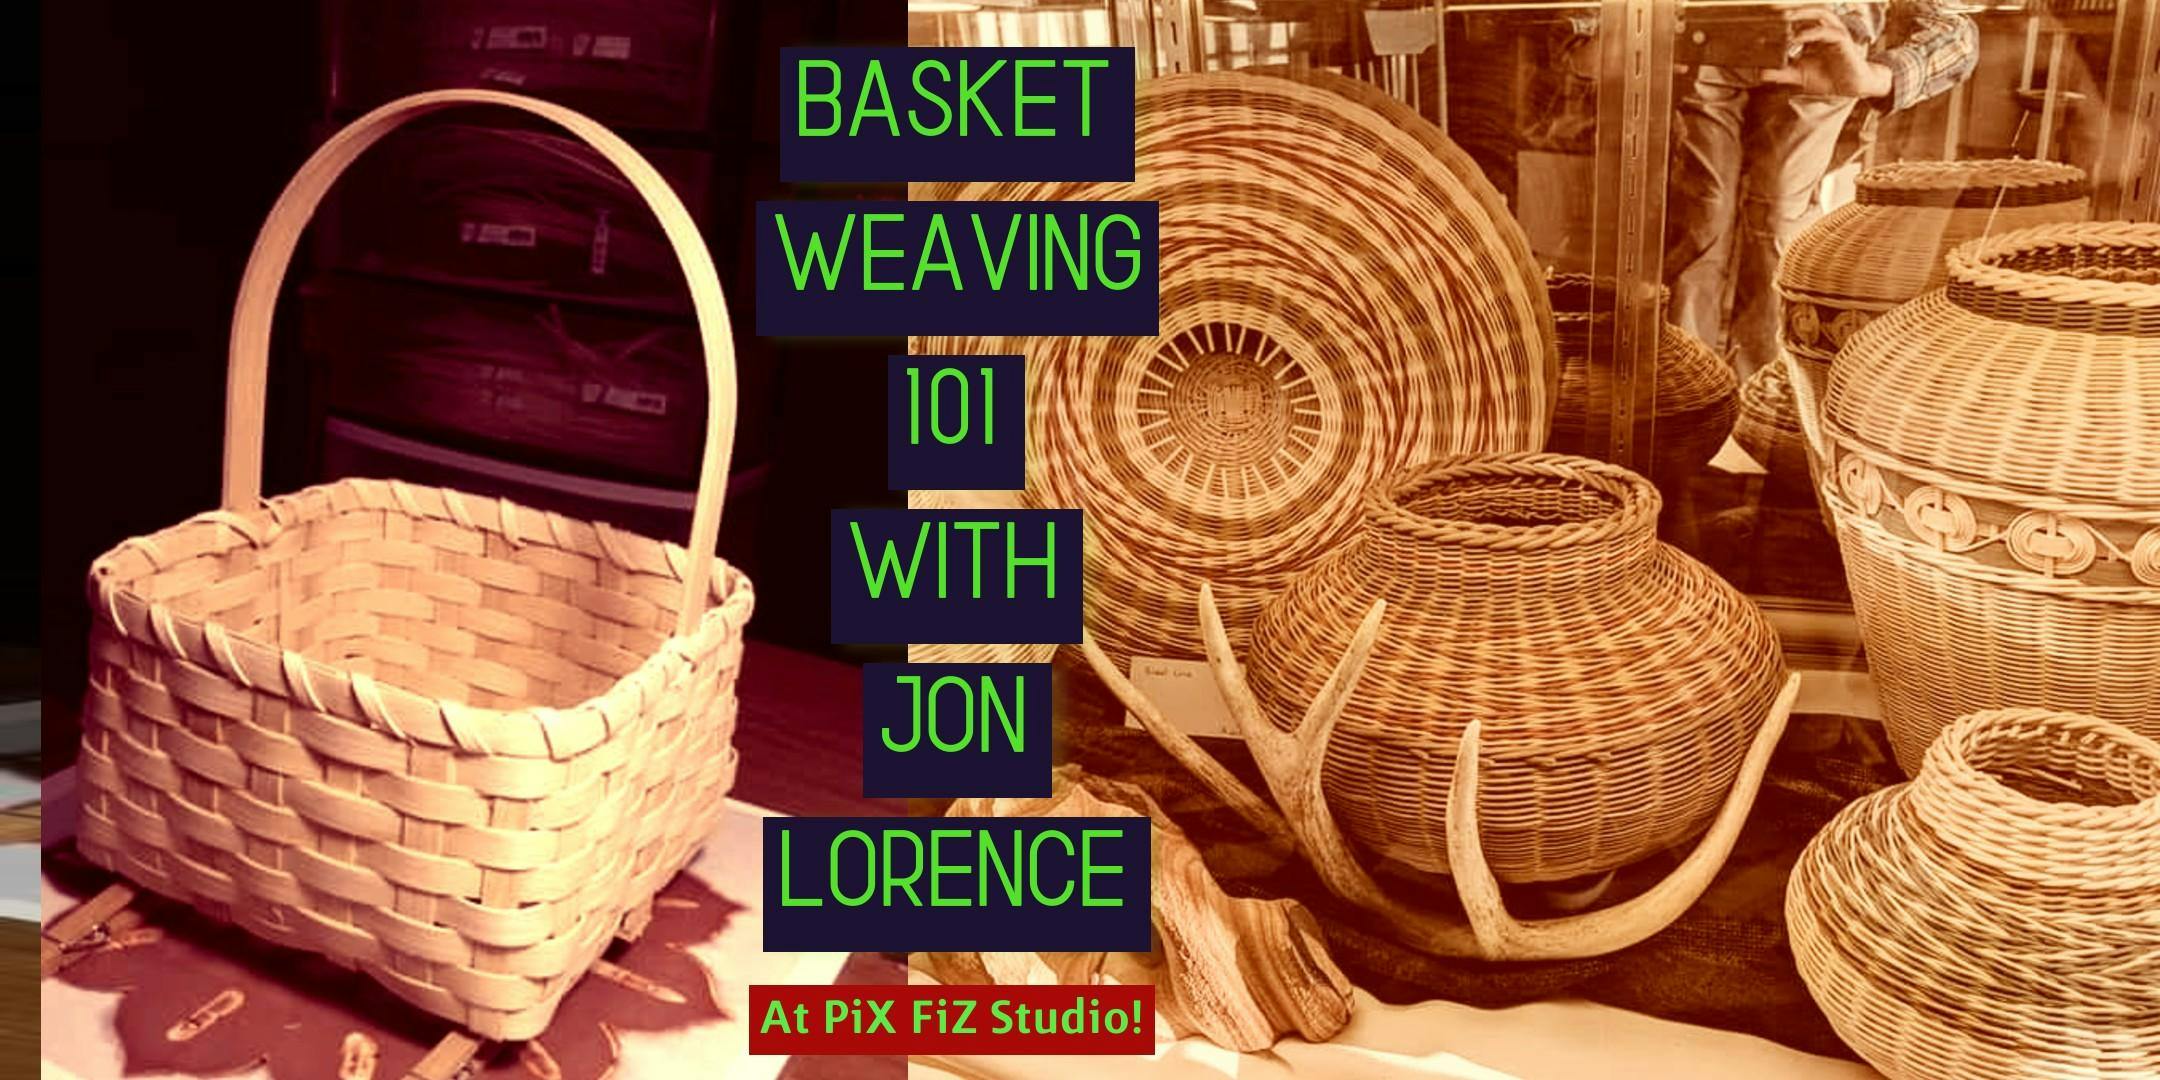 Basketweaving 101 with Jon Lorence